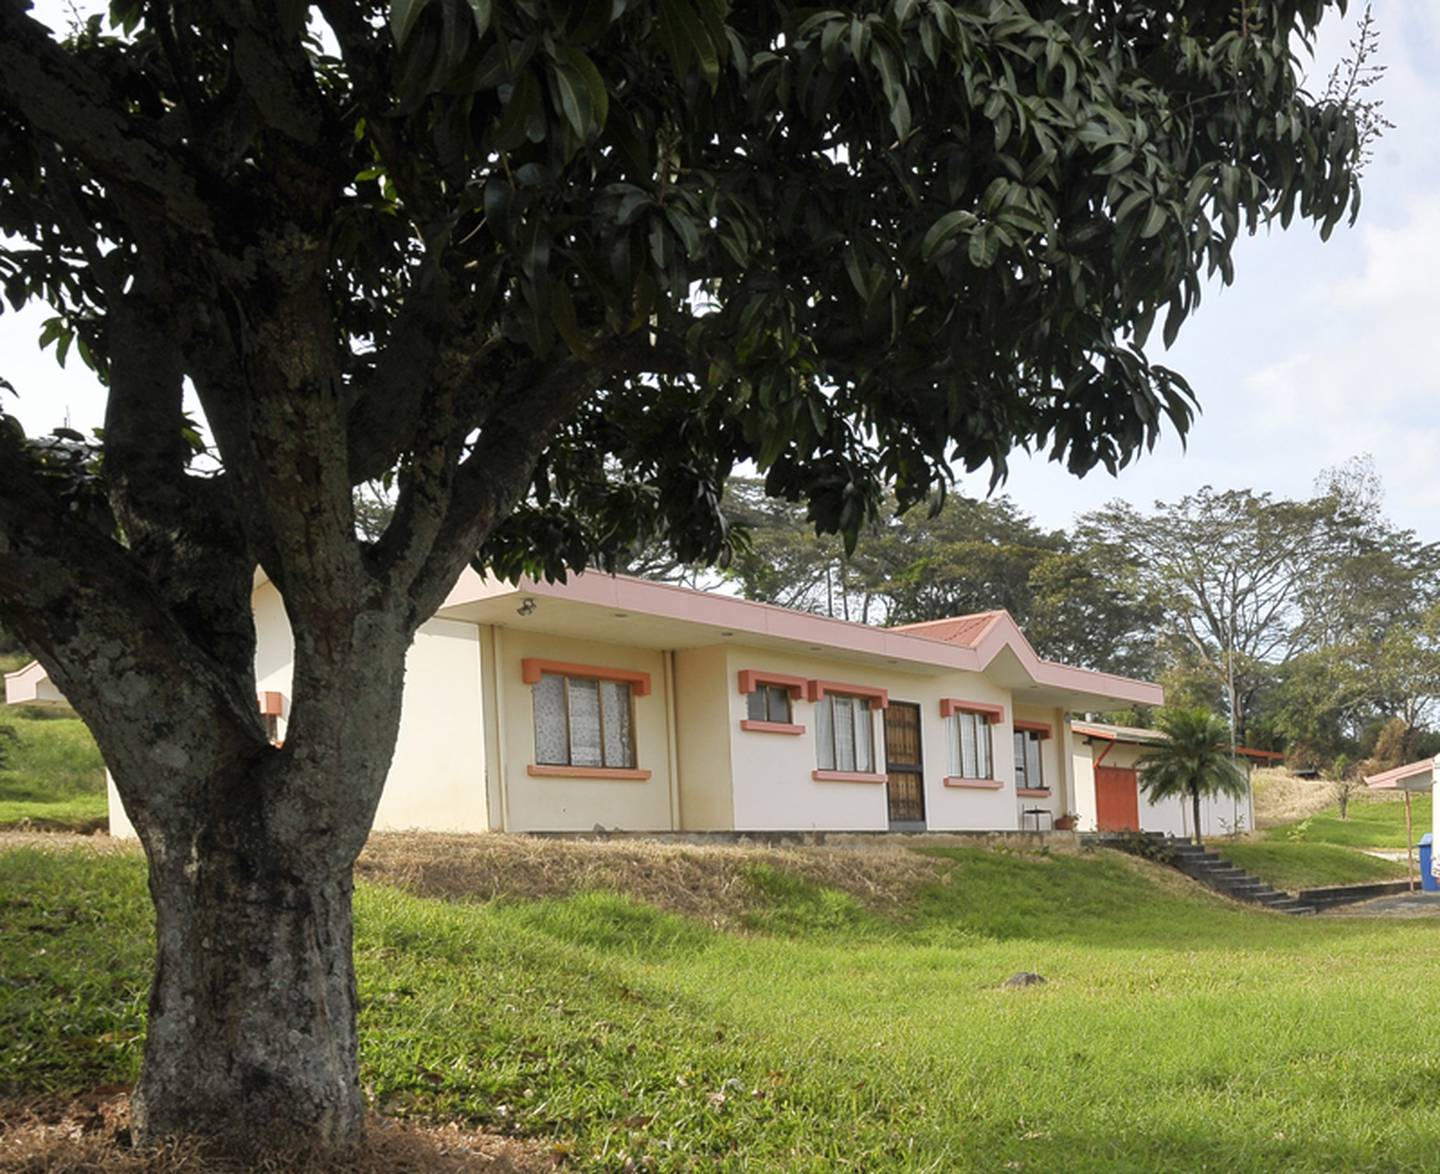 CCSS y el Banco Popular reclutan a familias para cuidar casas | La Nación